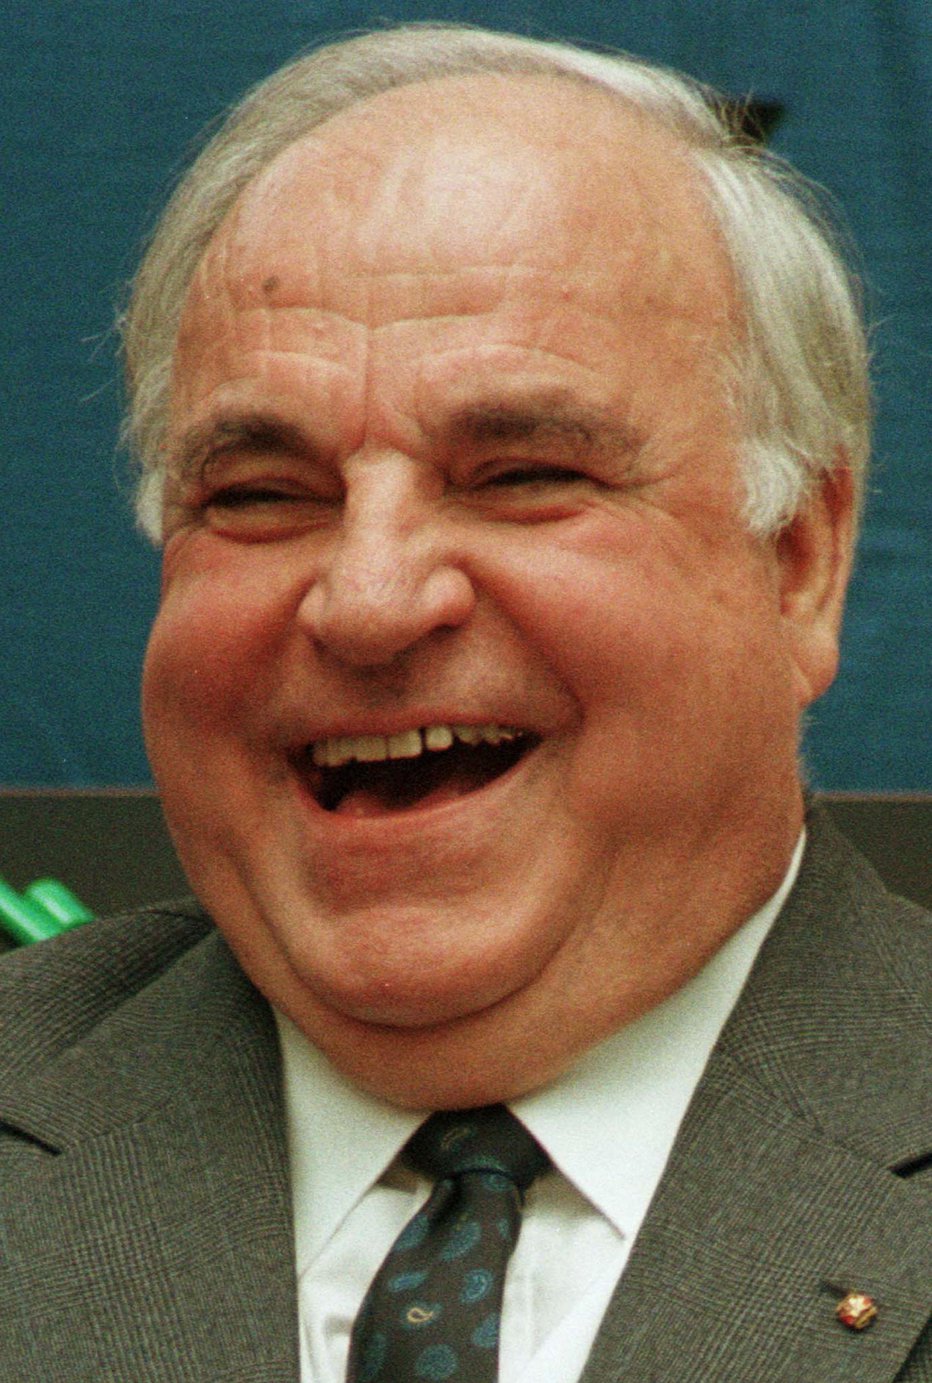 Fotografija: Menda se je kancler Kohl sladko nasmehnil ob domnevnem pismu Lojzeta Peterleta. FOTO: JURGEN SCHWARZ/REUTERS